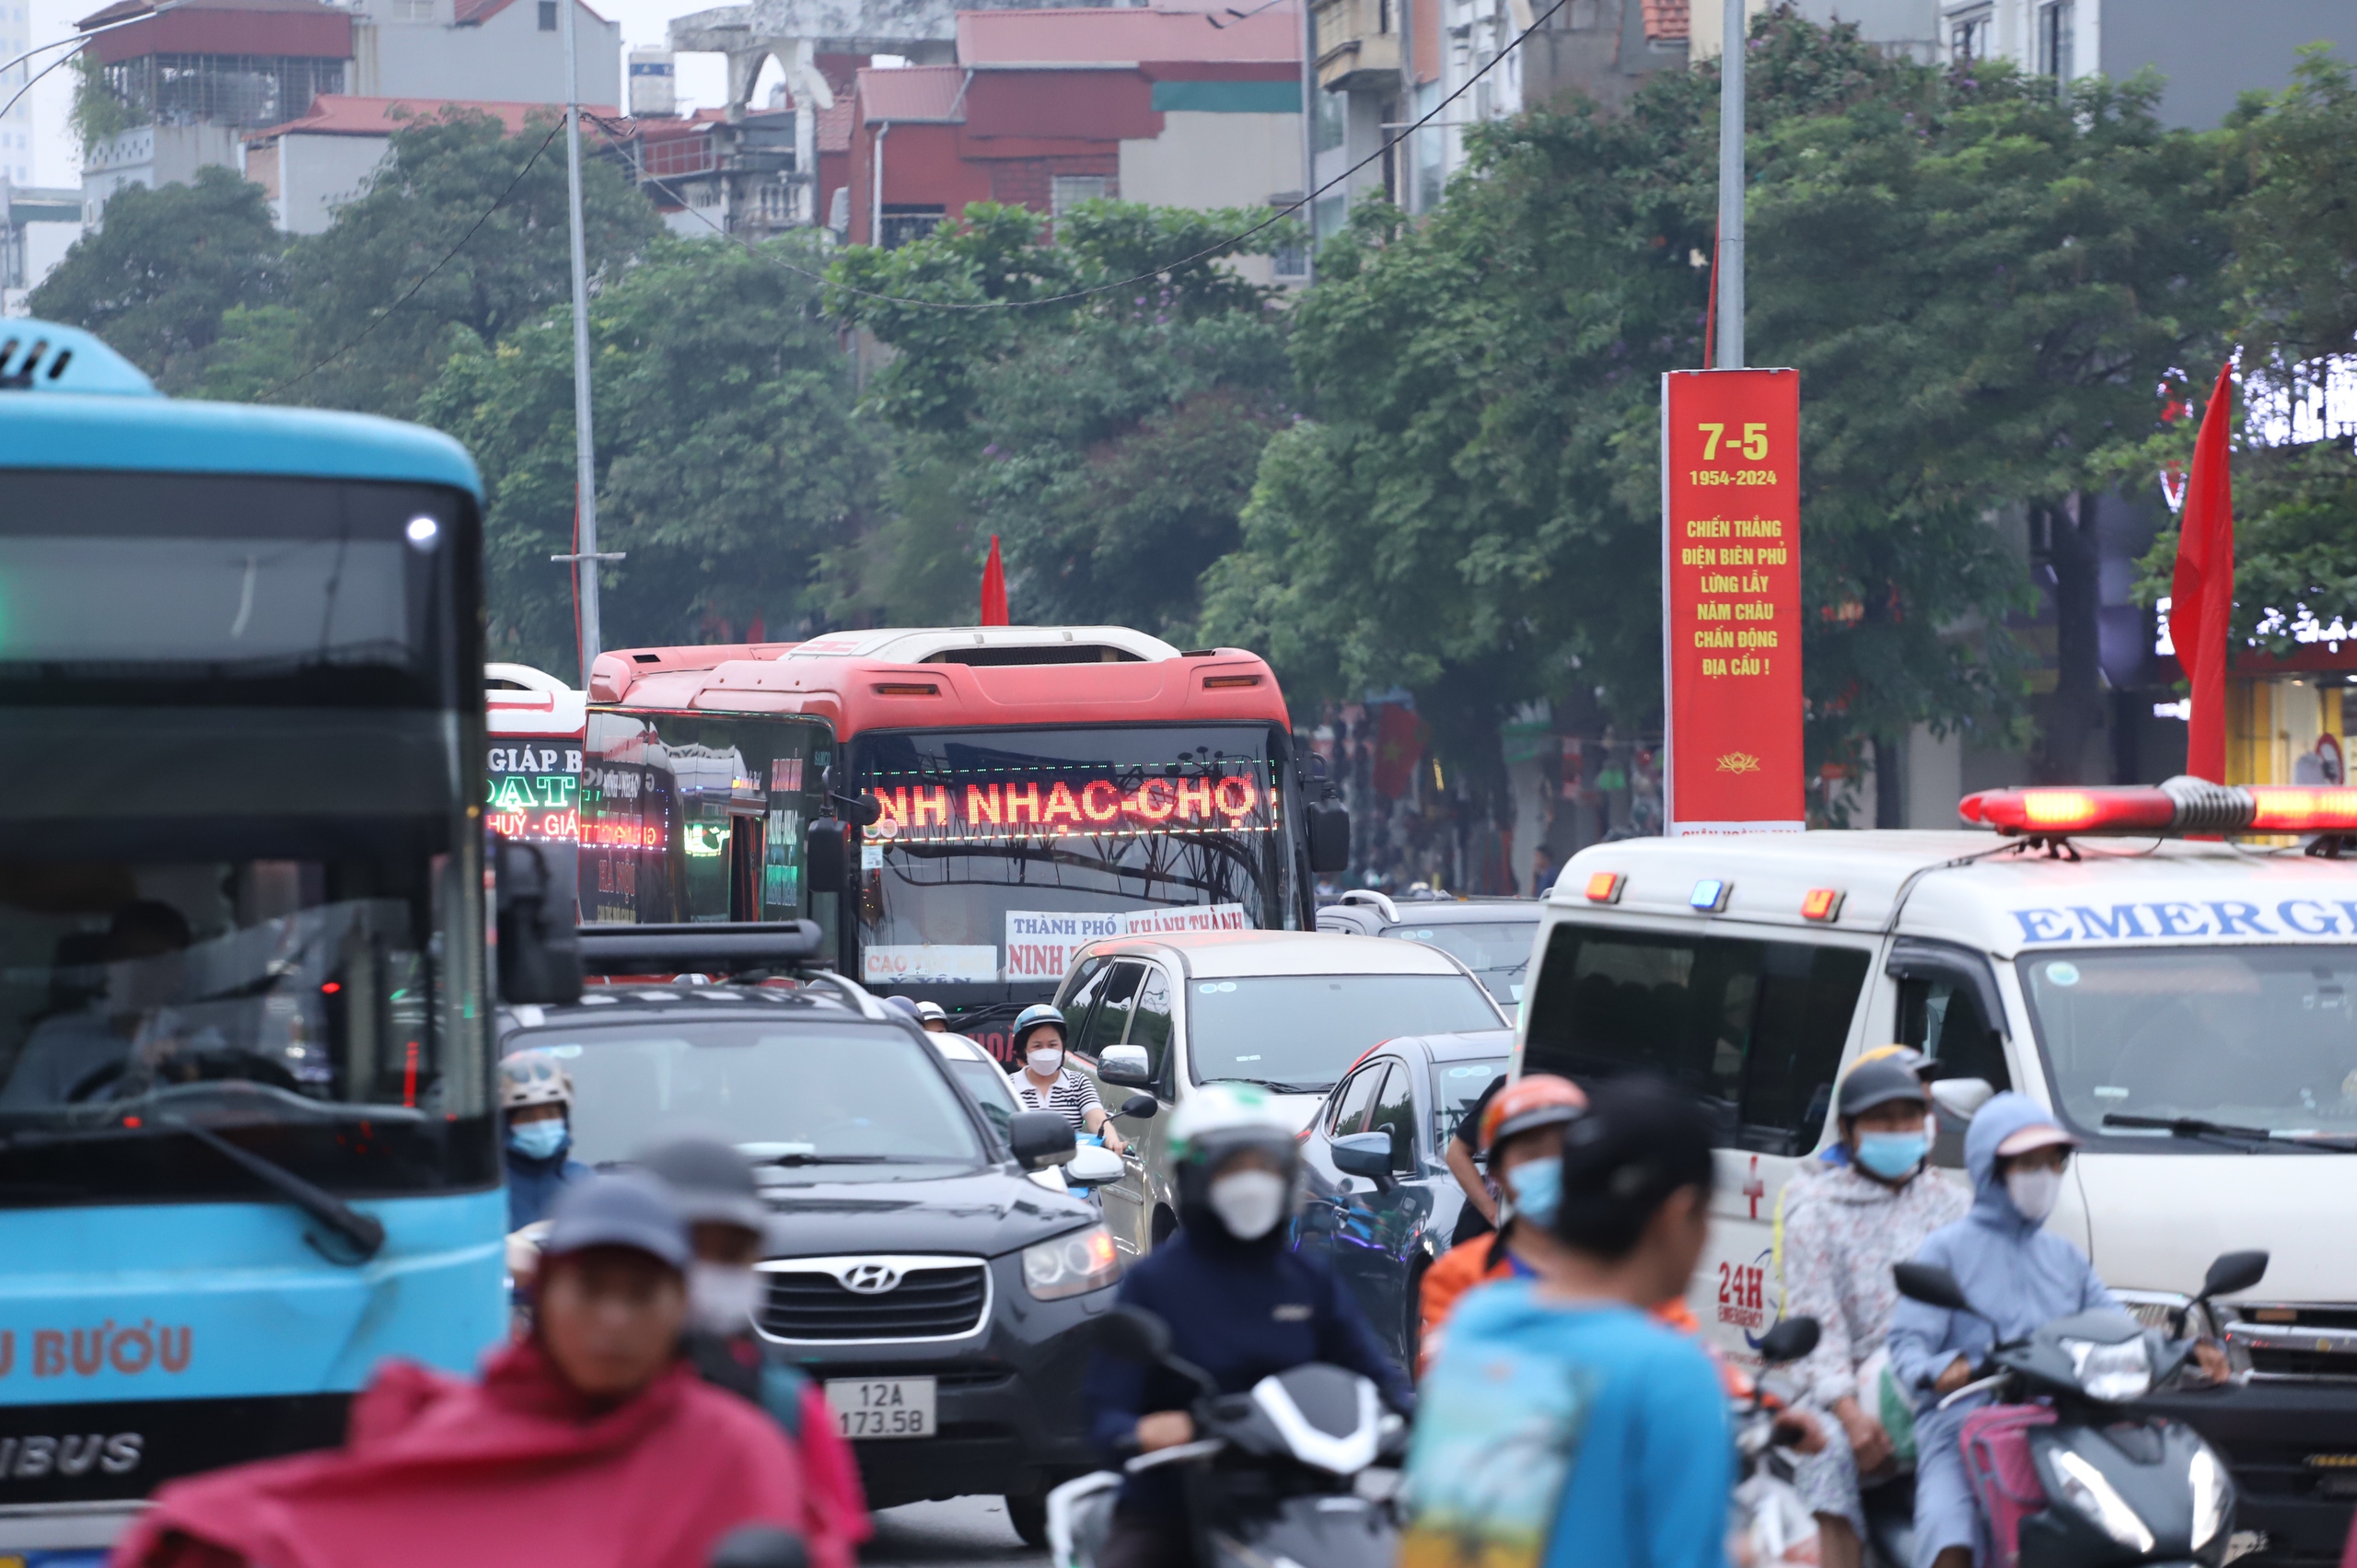 Bất ngờ tình hình giao thông tại Hà Nội vào ngày cuối nghỉ lễ 30/4 - 1/5- Ảnh 11.